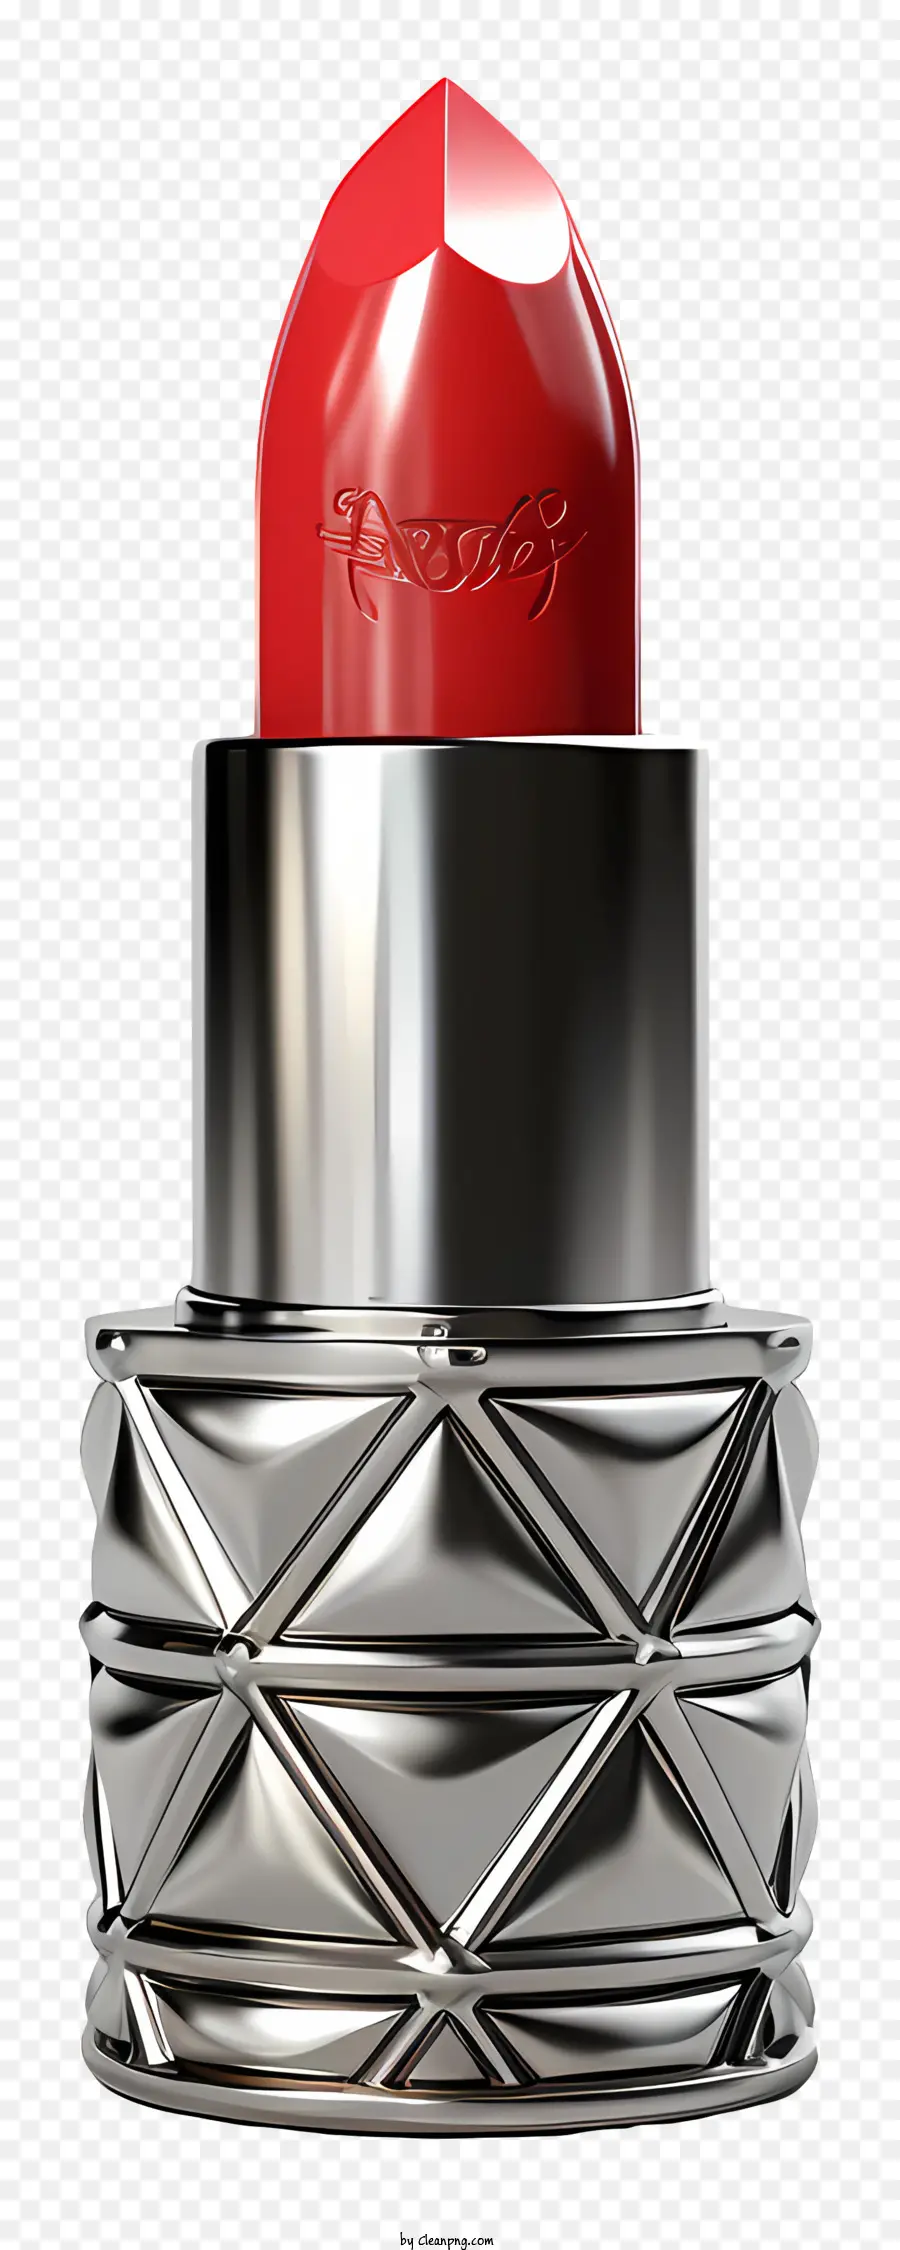 Roter Lippenstift Silberbehälter Diamantmuster glänzender Lippenstift Glaslippenstift - Nahaufnahmefotografie von Red Lippenstift im Silberbehälter